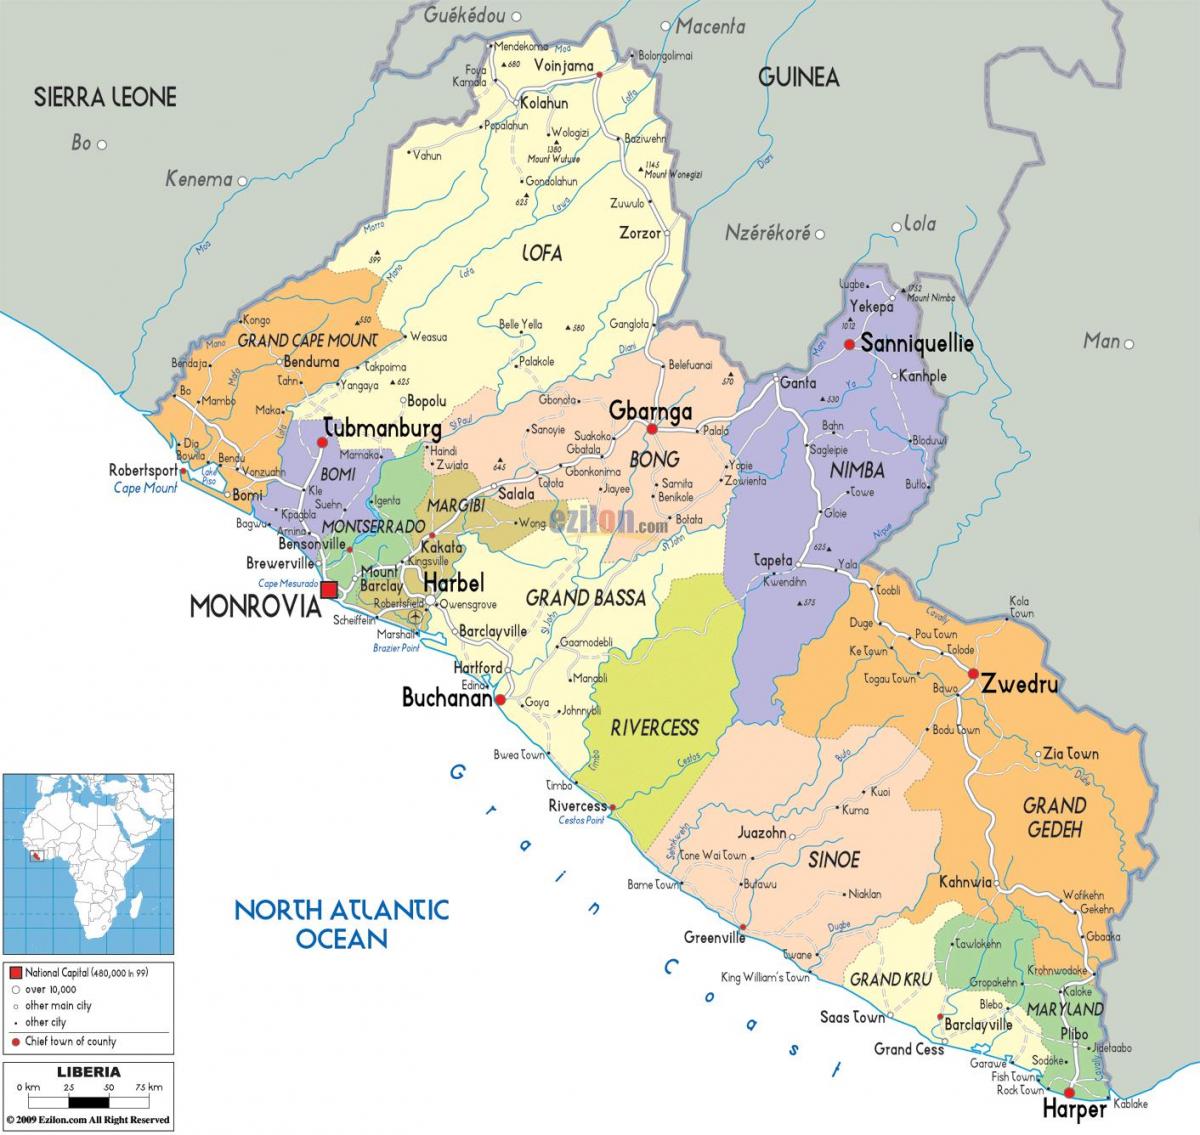 la mappa politica della Liberia